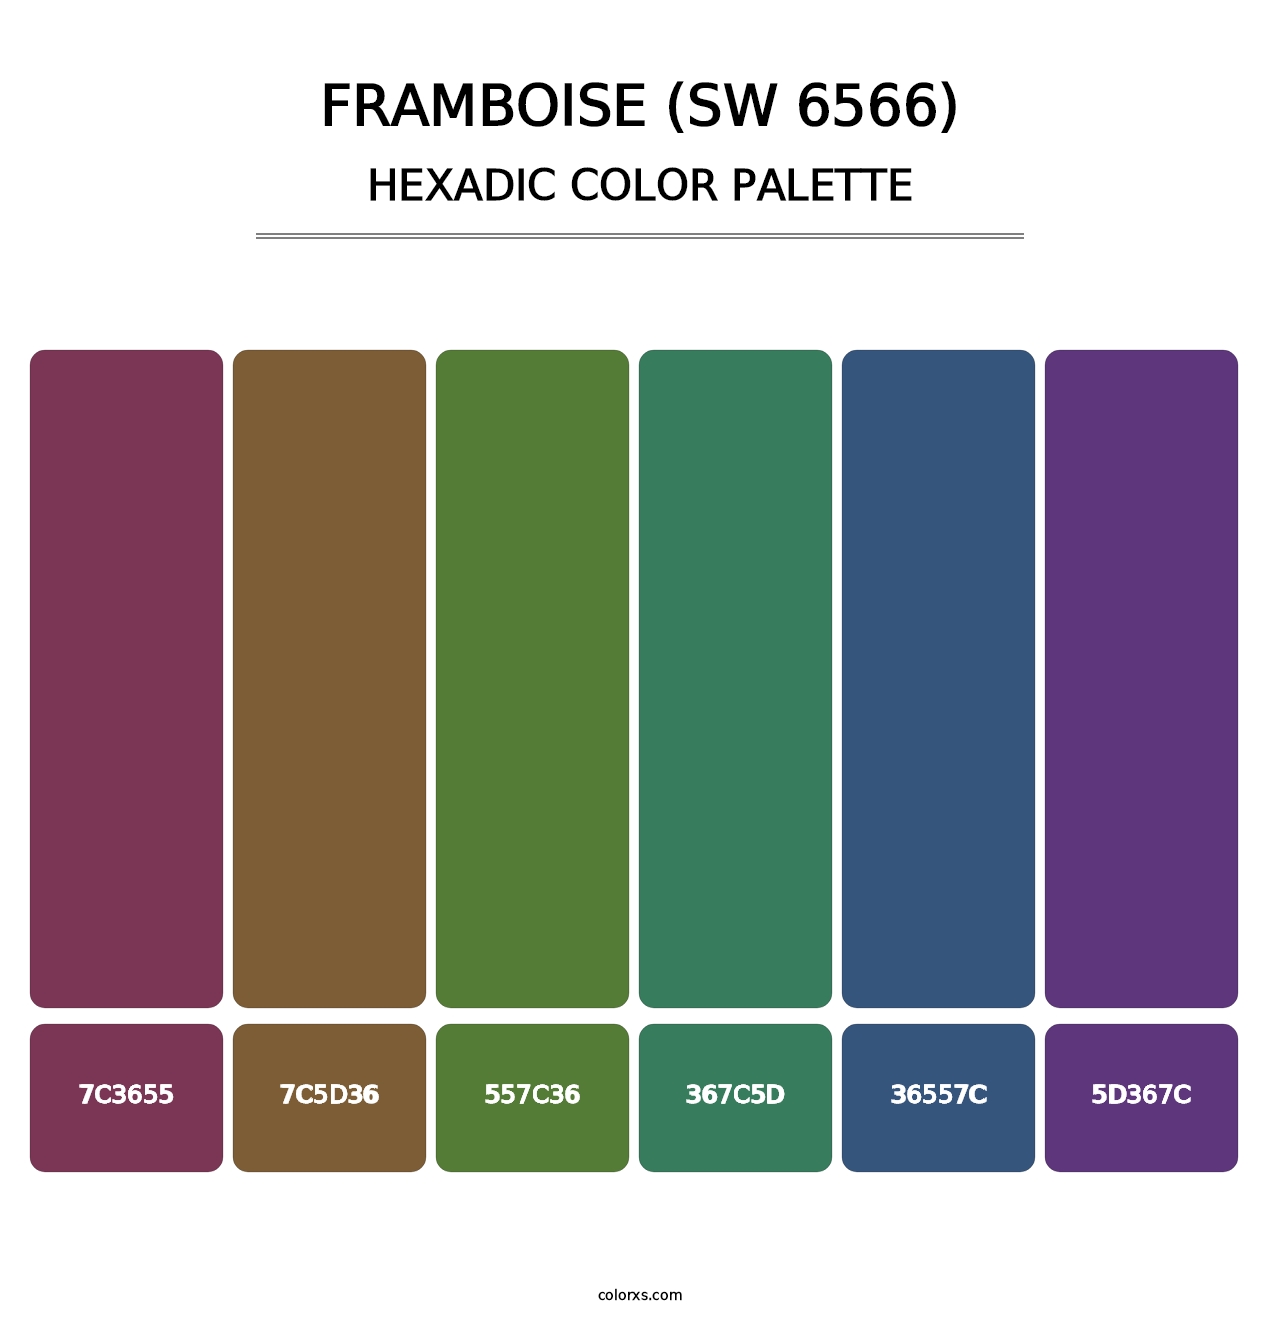 Framboise (SW 6566) - Hexadic Color Palette